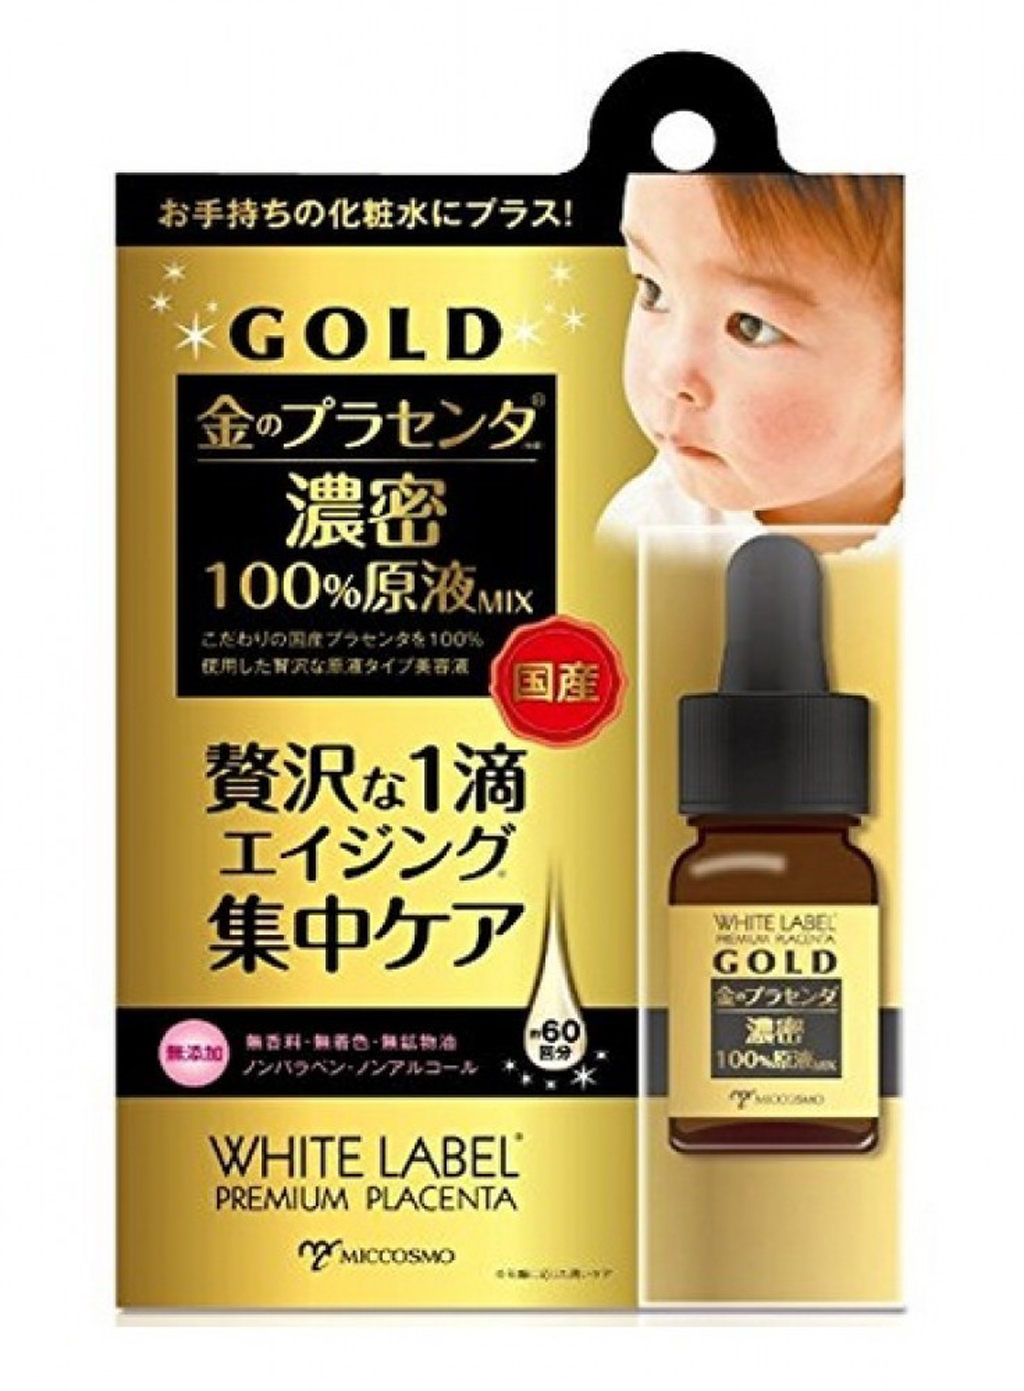 Serum White Label Premium Placenta Gold Essence